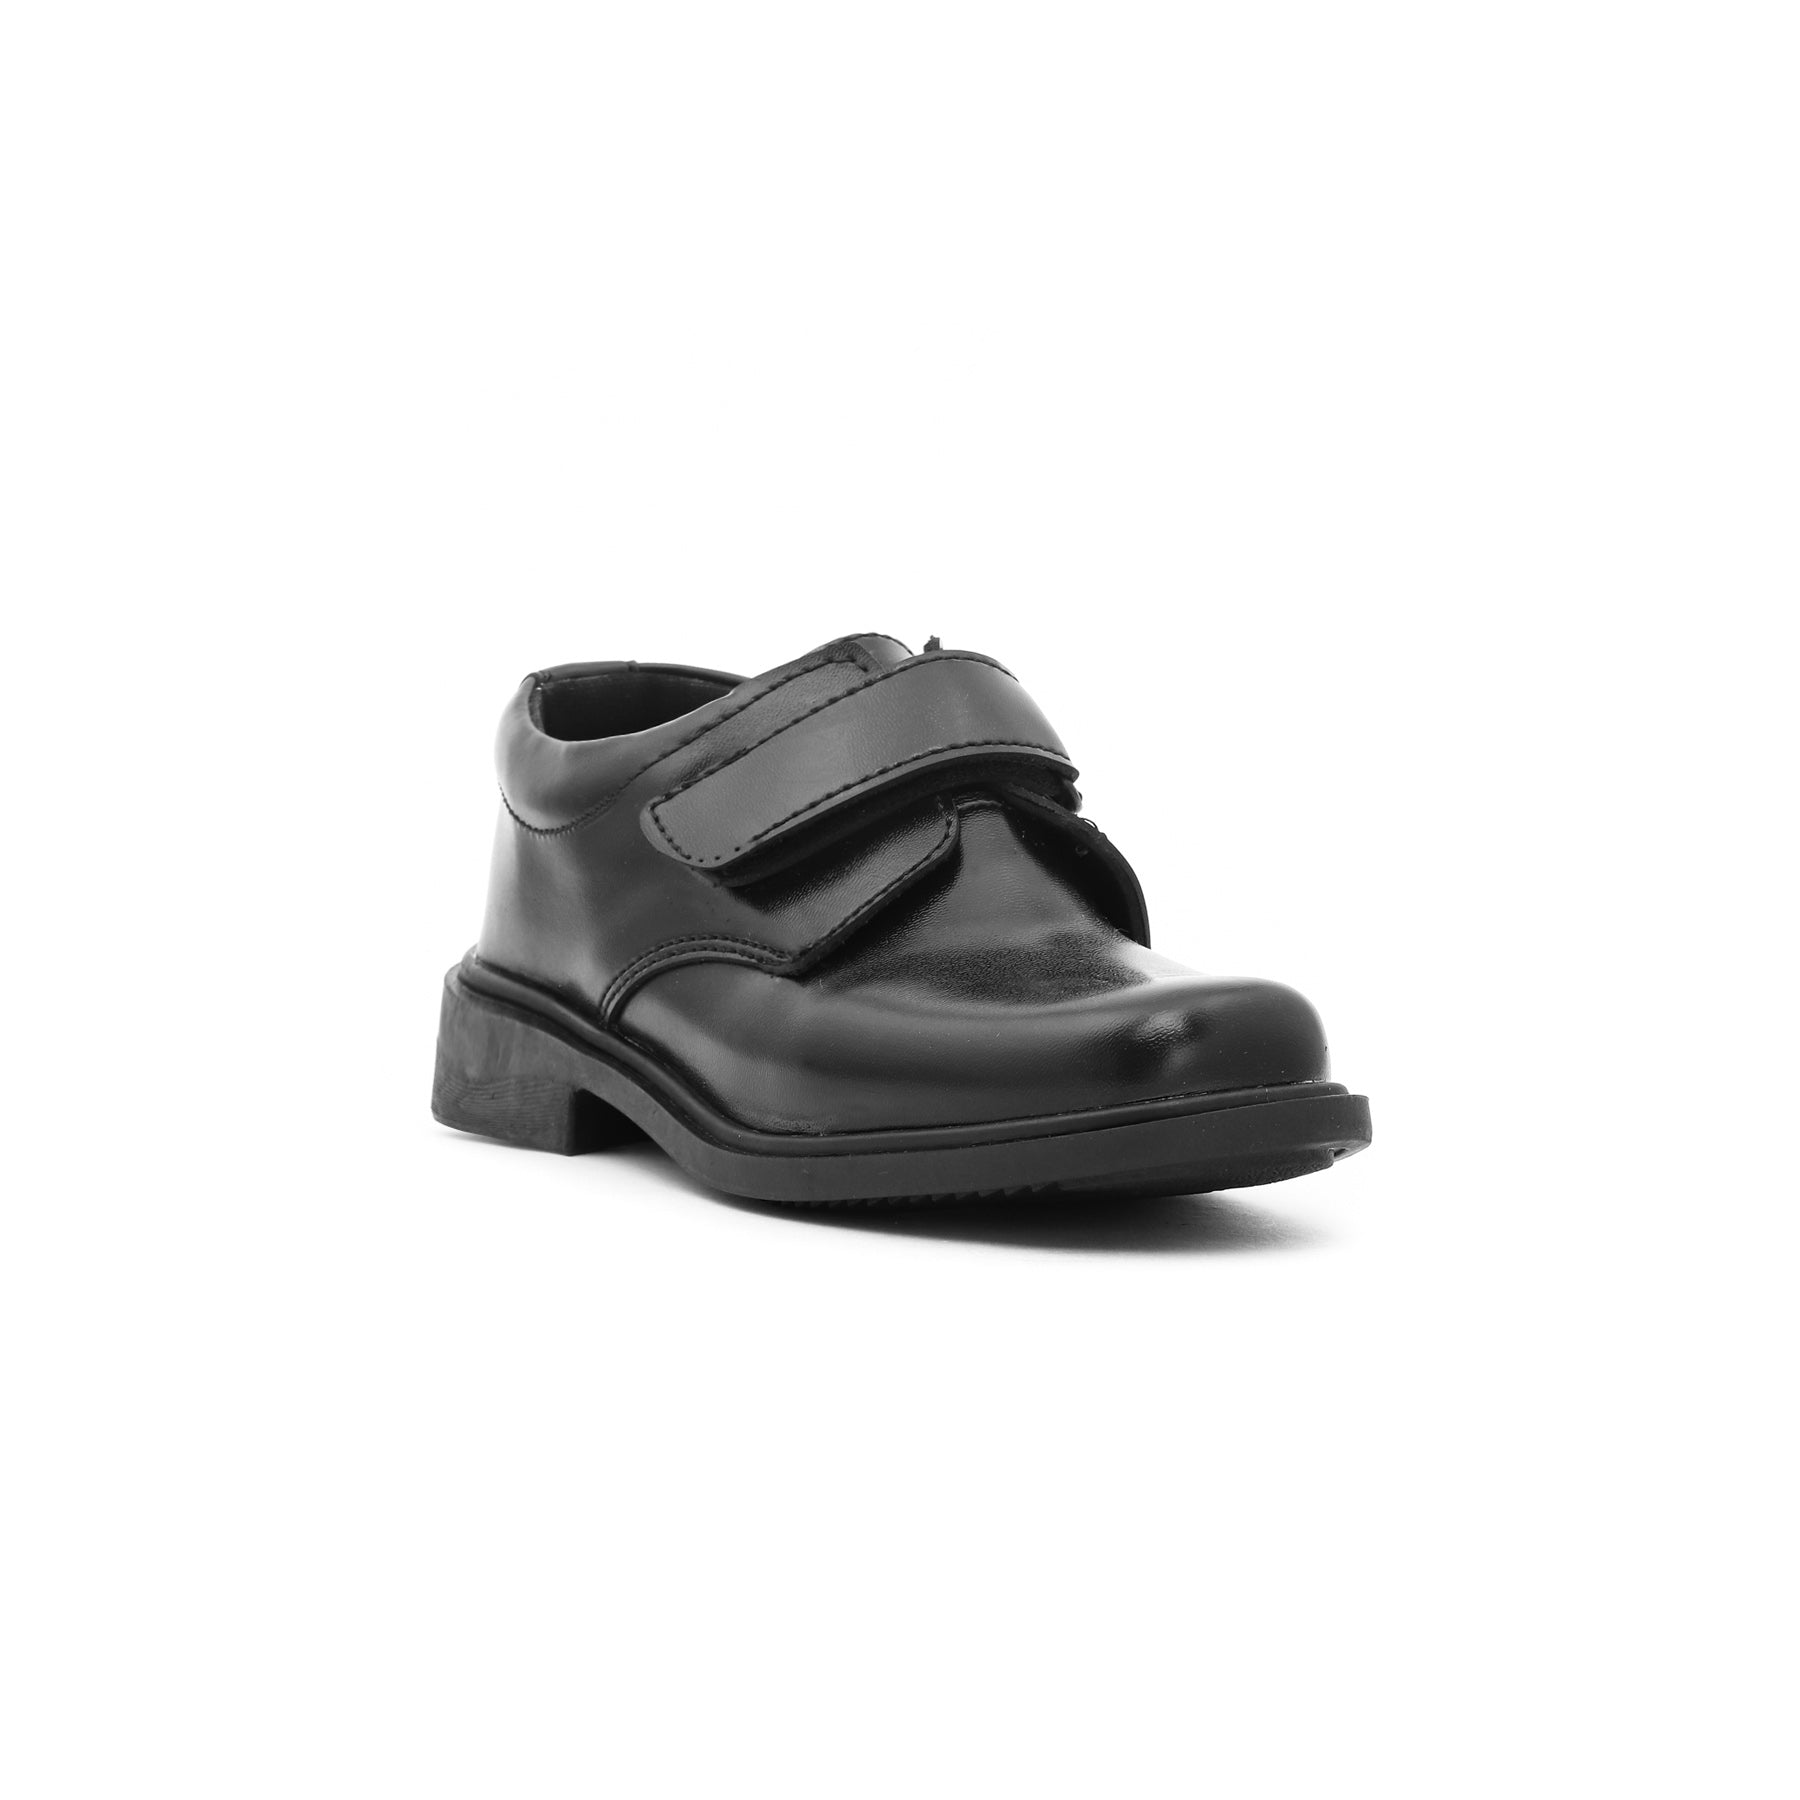 Boys Black Schools Shoes SK1049